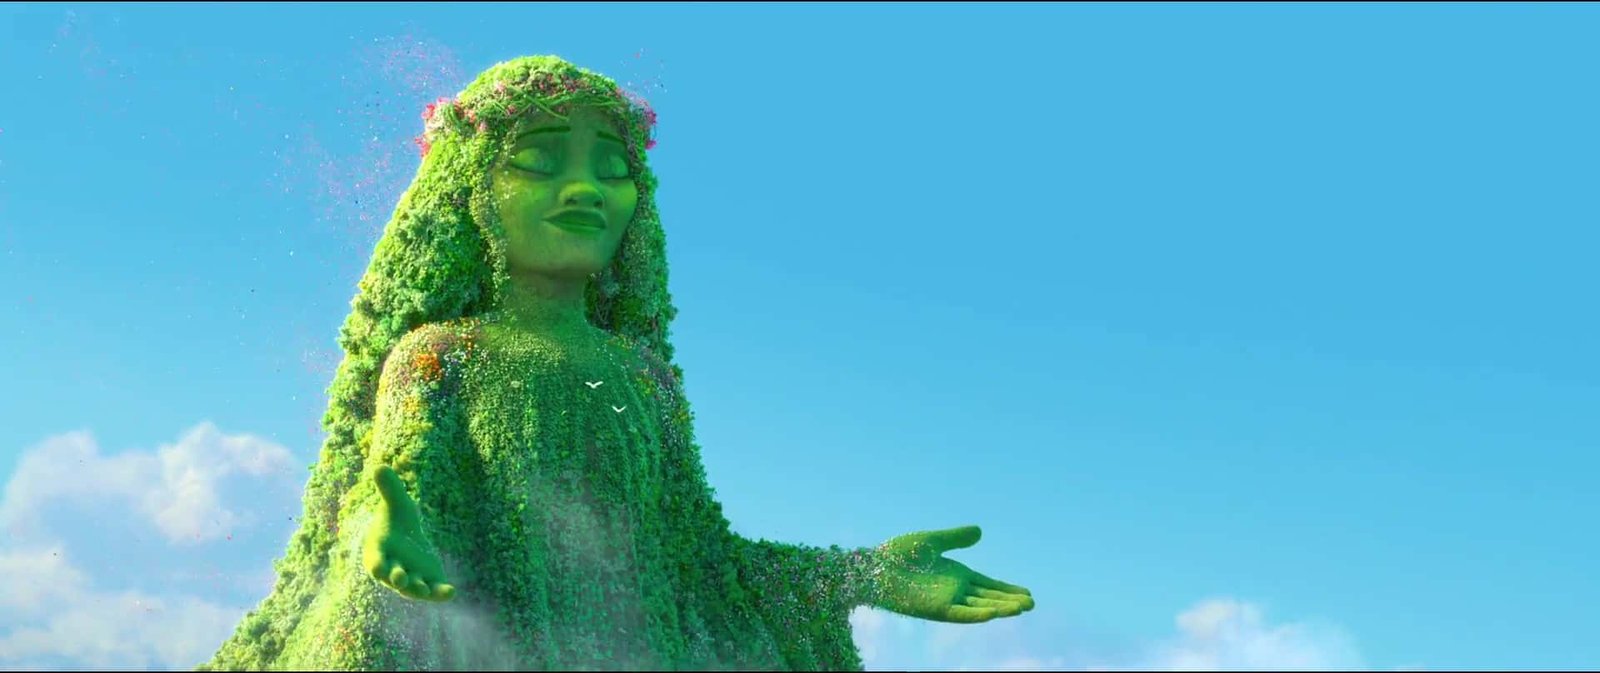 Une image surréaliste d'une femme couverte de verdure sur un ciel bleu vif, incarnant le concept de la nature, avec ses bras tendus et une expression sereine rappelant les personnages de Disney.